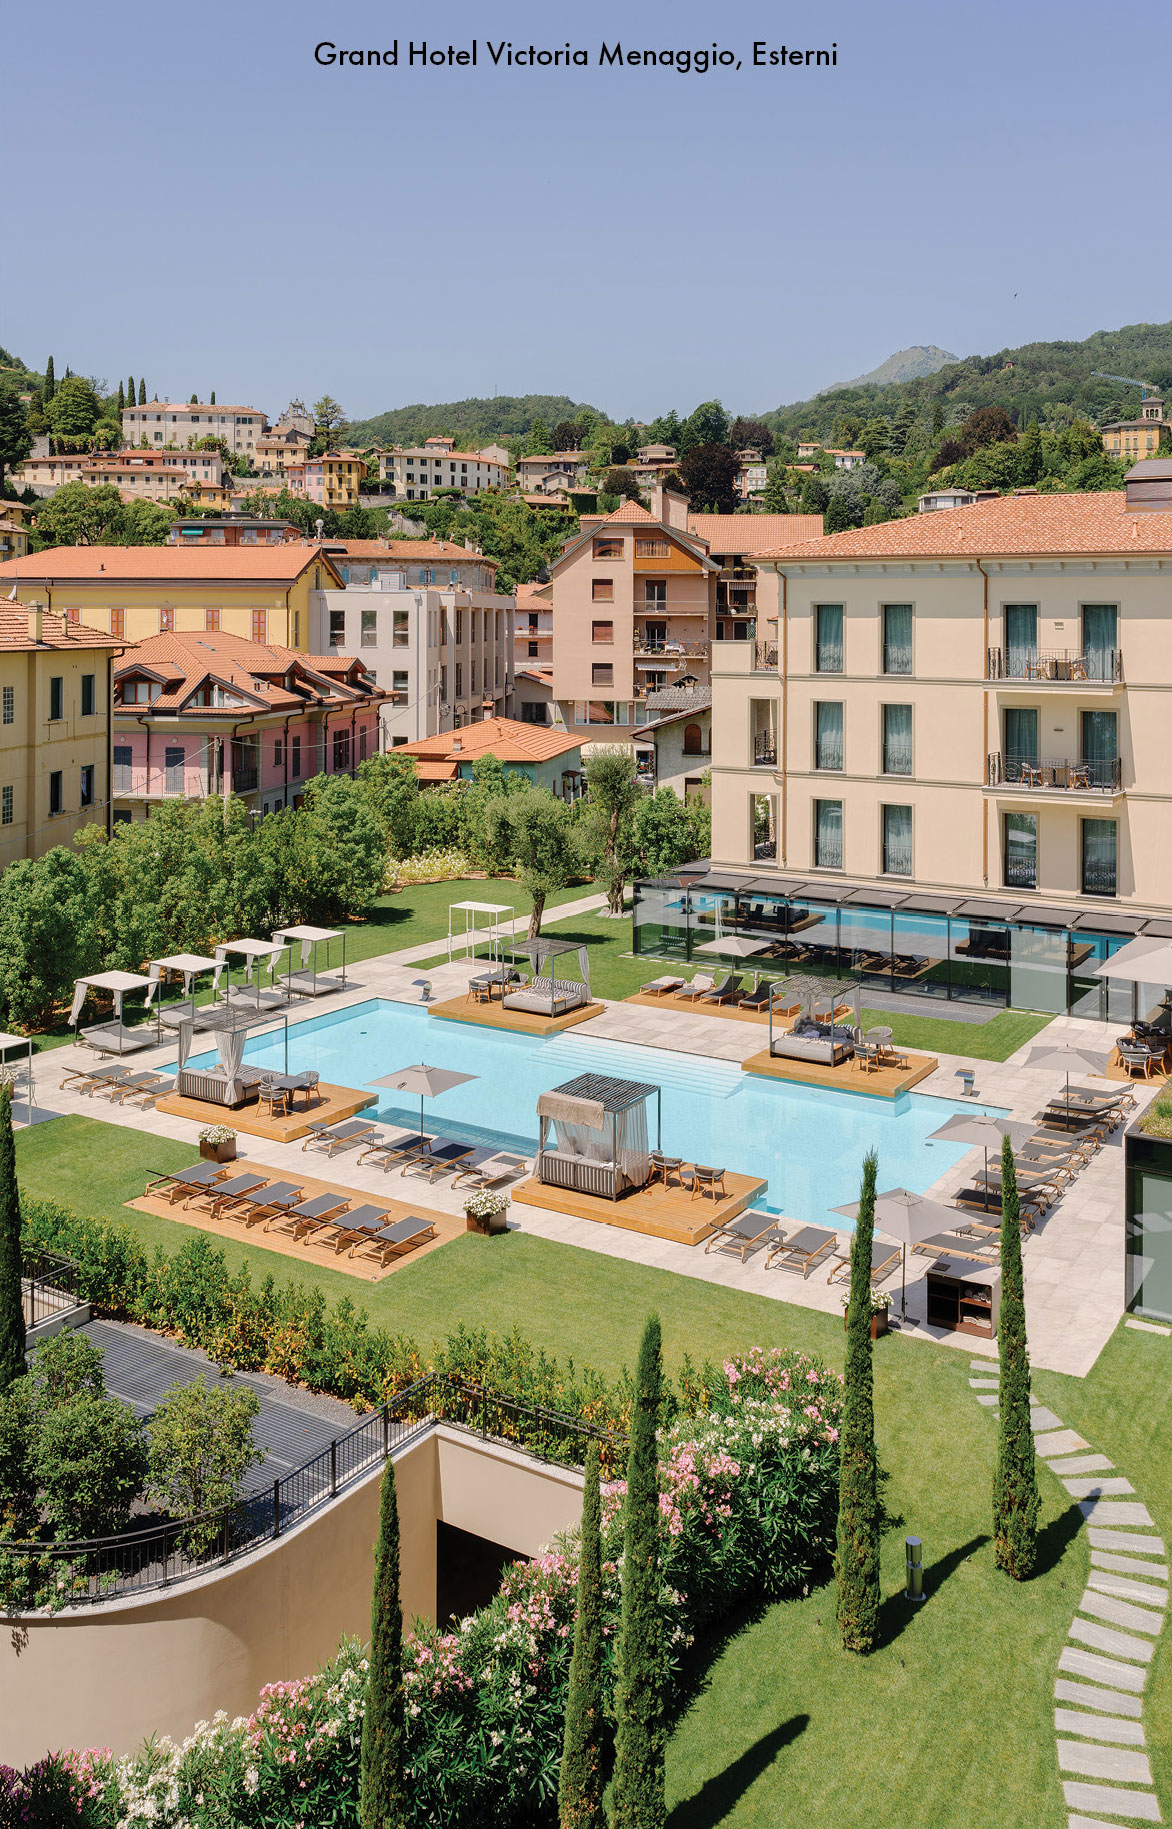 R COLLECTION HOTELS Grand Hotel Victoria Menaggio esterni (11)